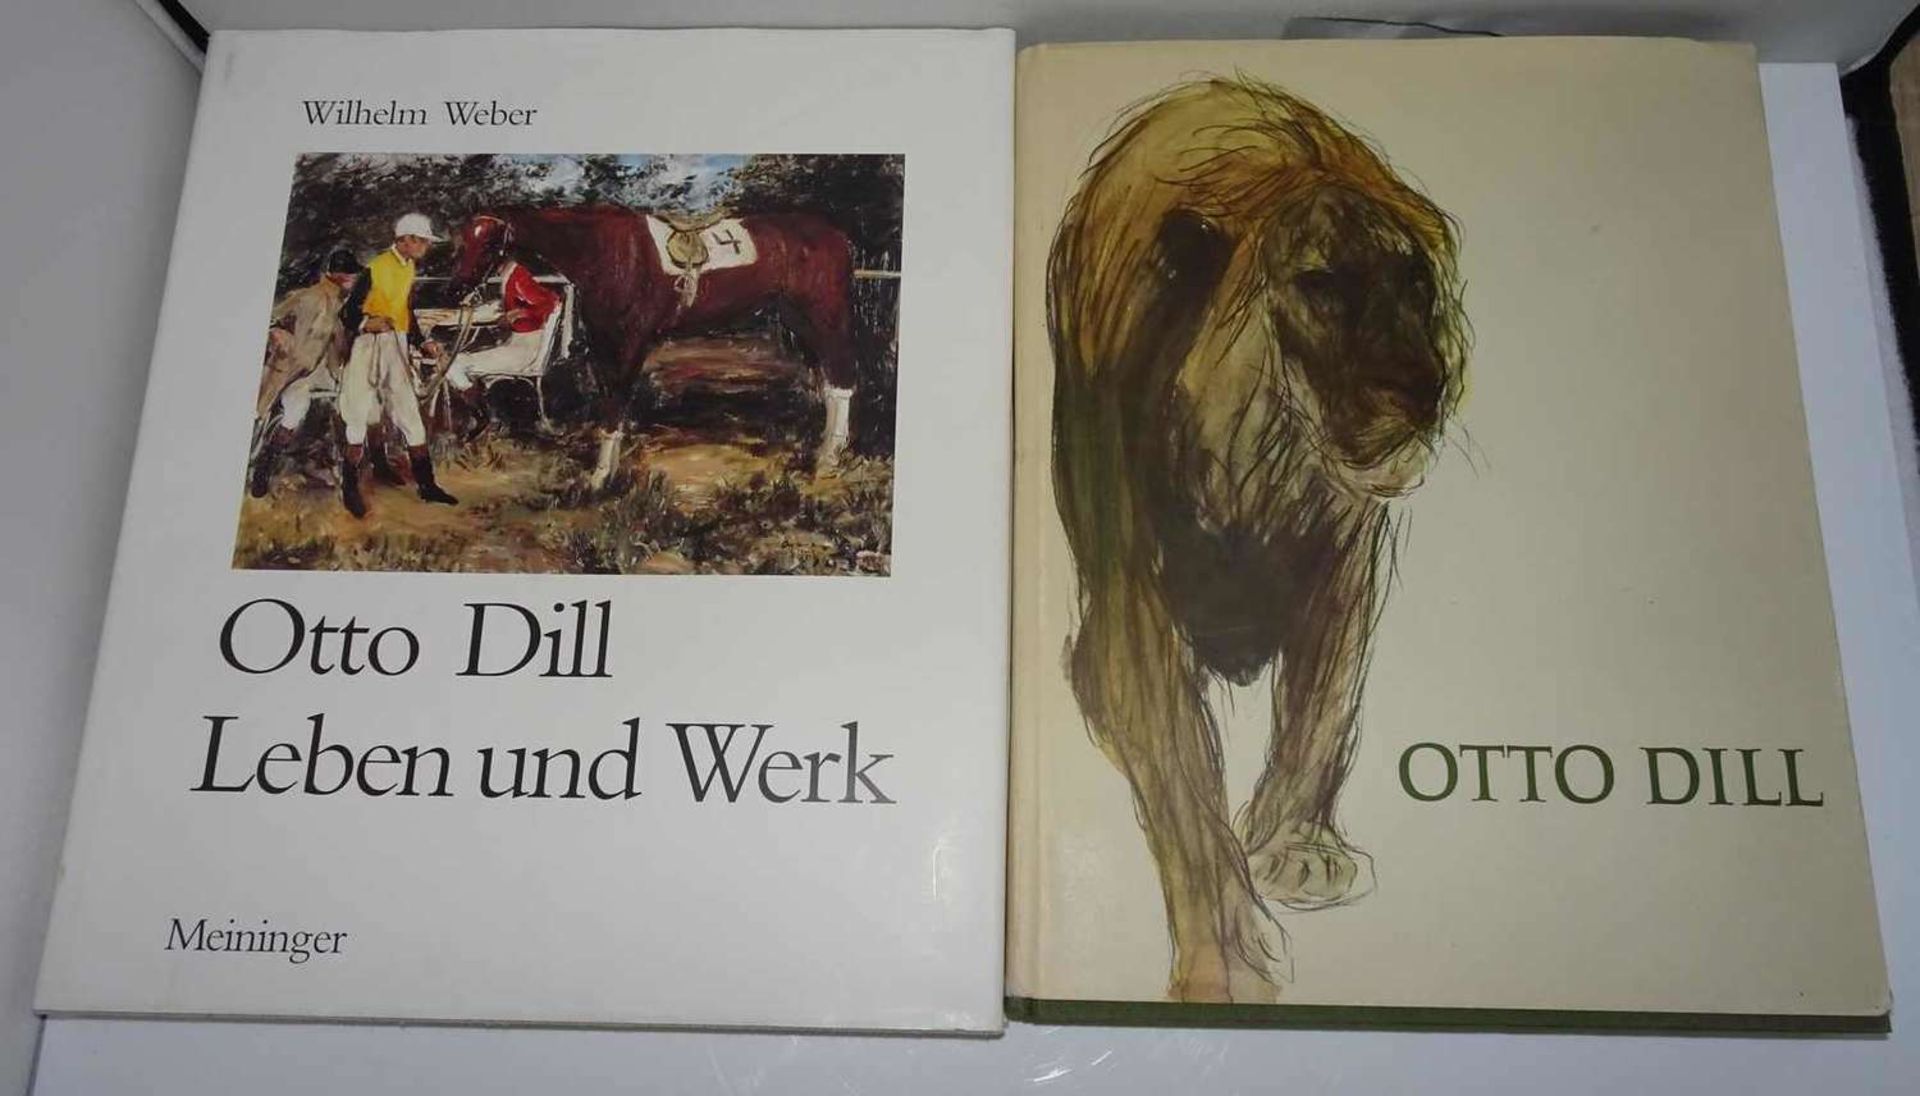 Otto Dill, zwei Bücher: 1. Wilhelm Weber, "Otto Dill, Leben und Werk", Verlag und Druckerei